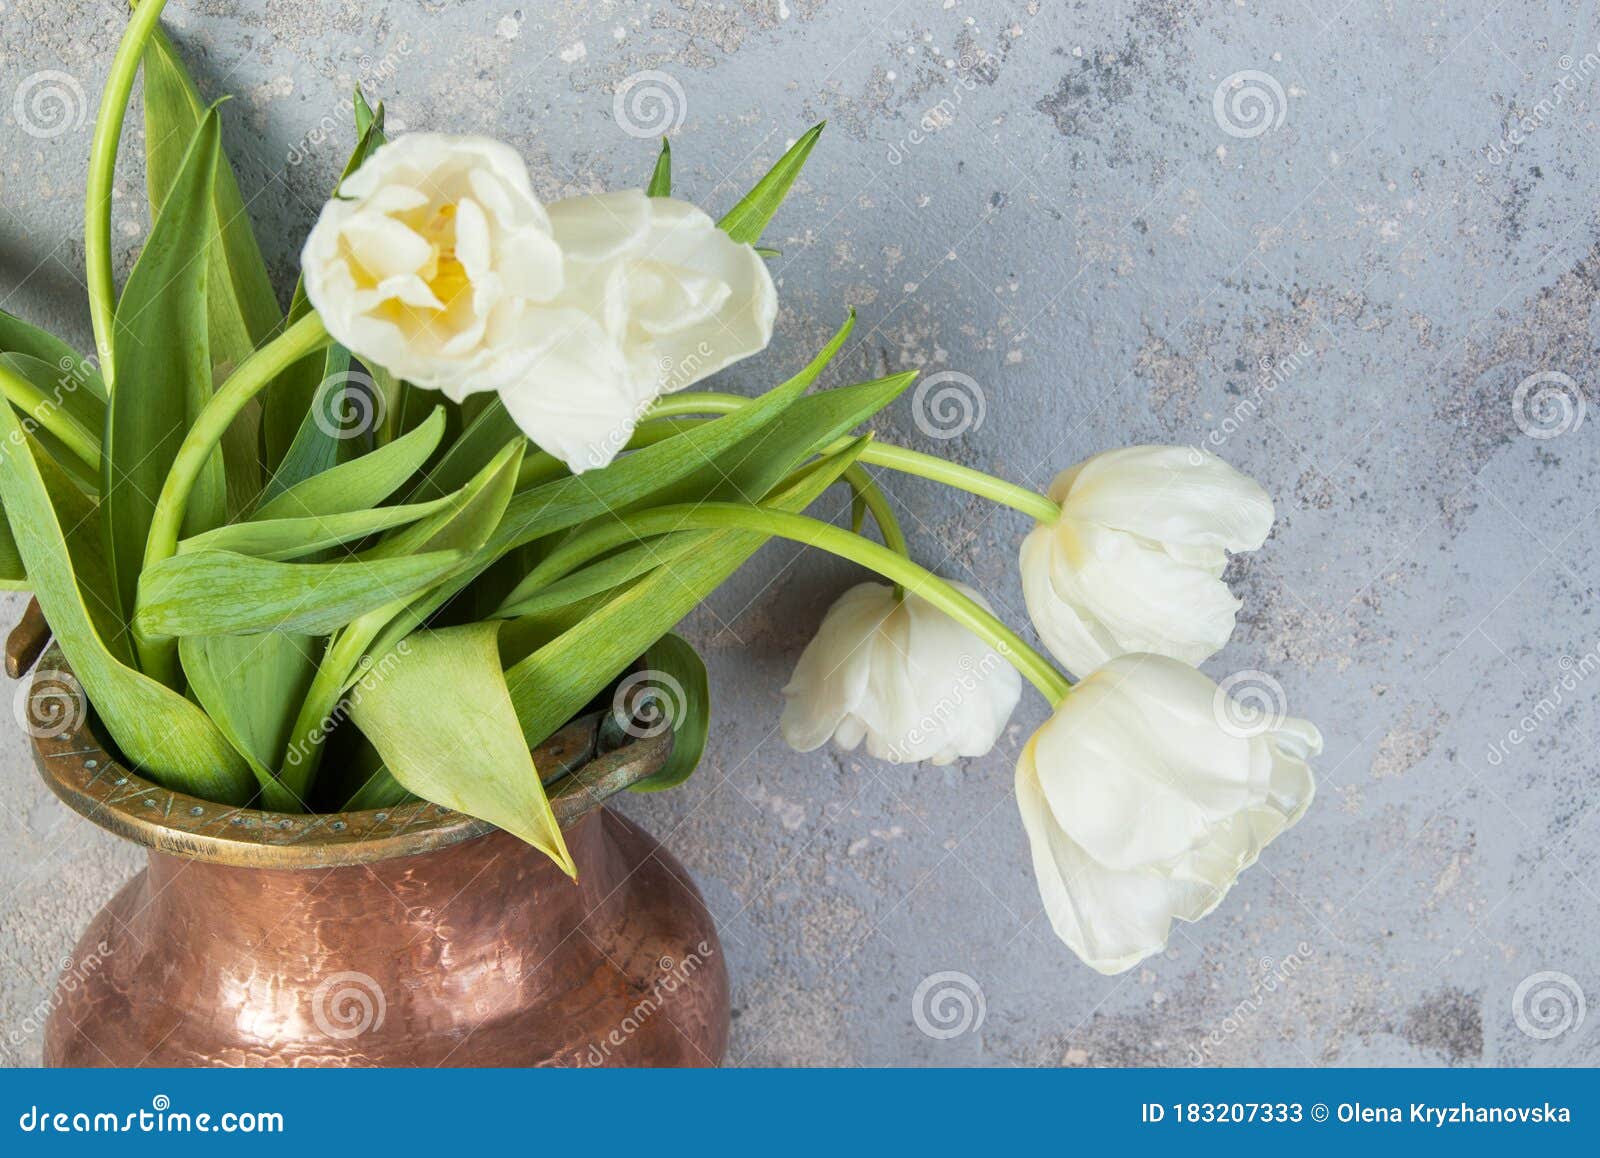 white tulips in old copper vase